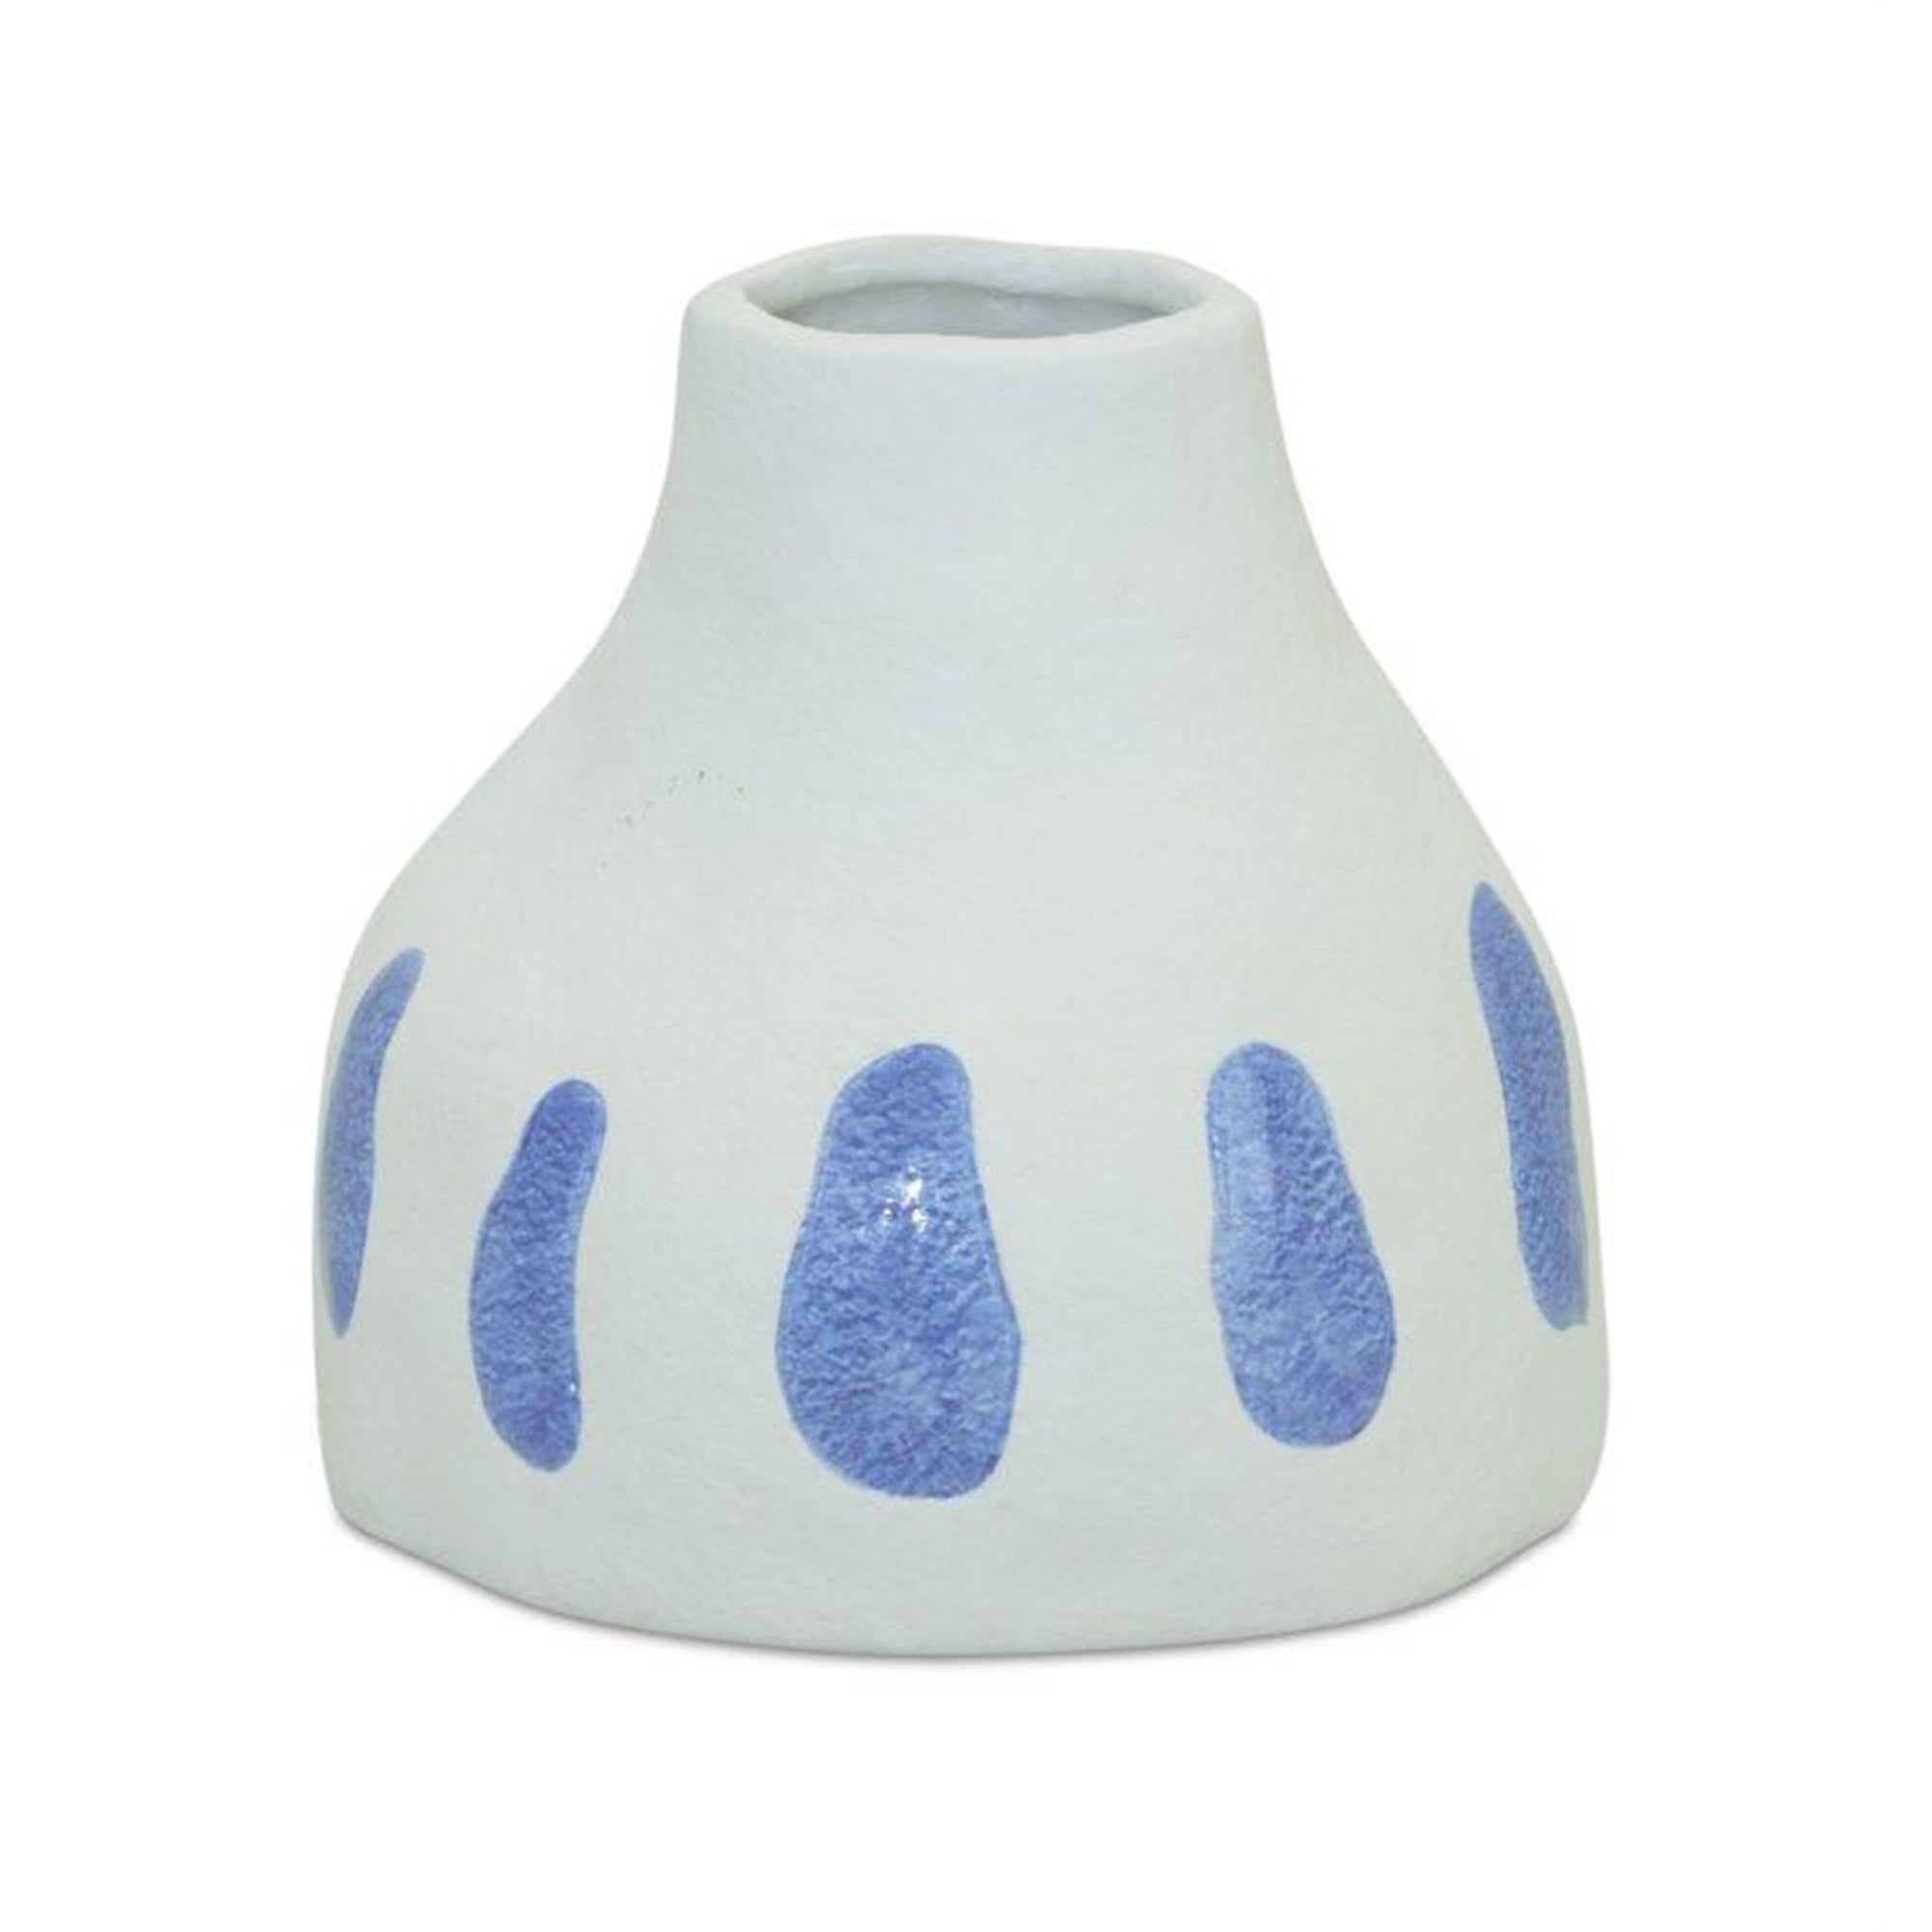 Vase (Set of 2) 5.25"L x 4.75"H Ceramic